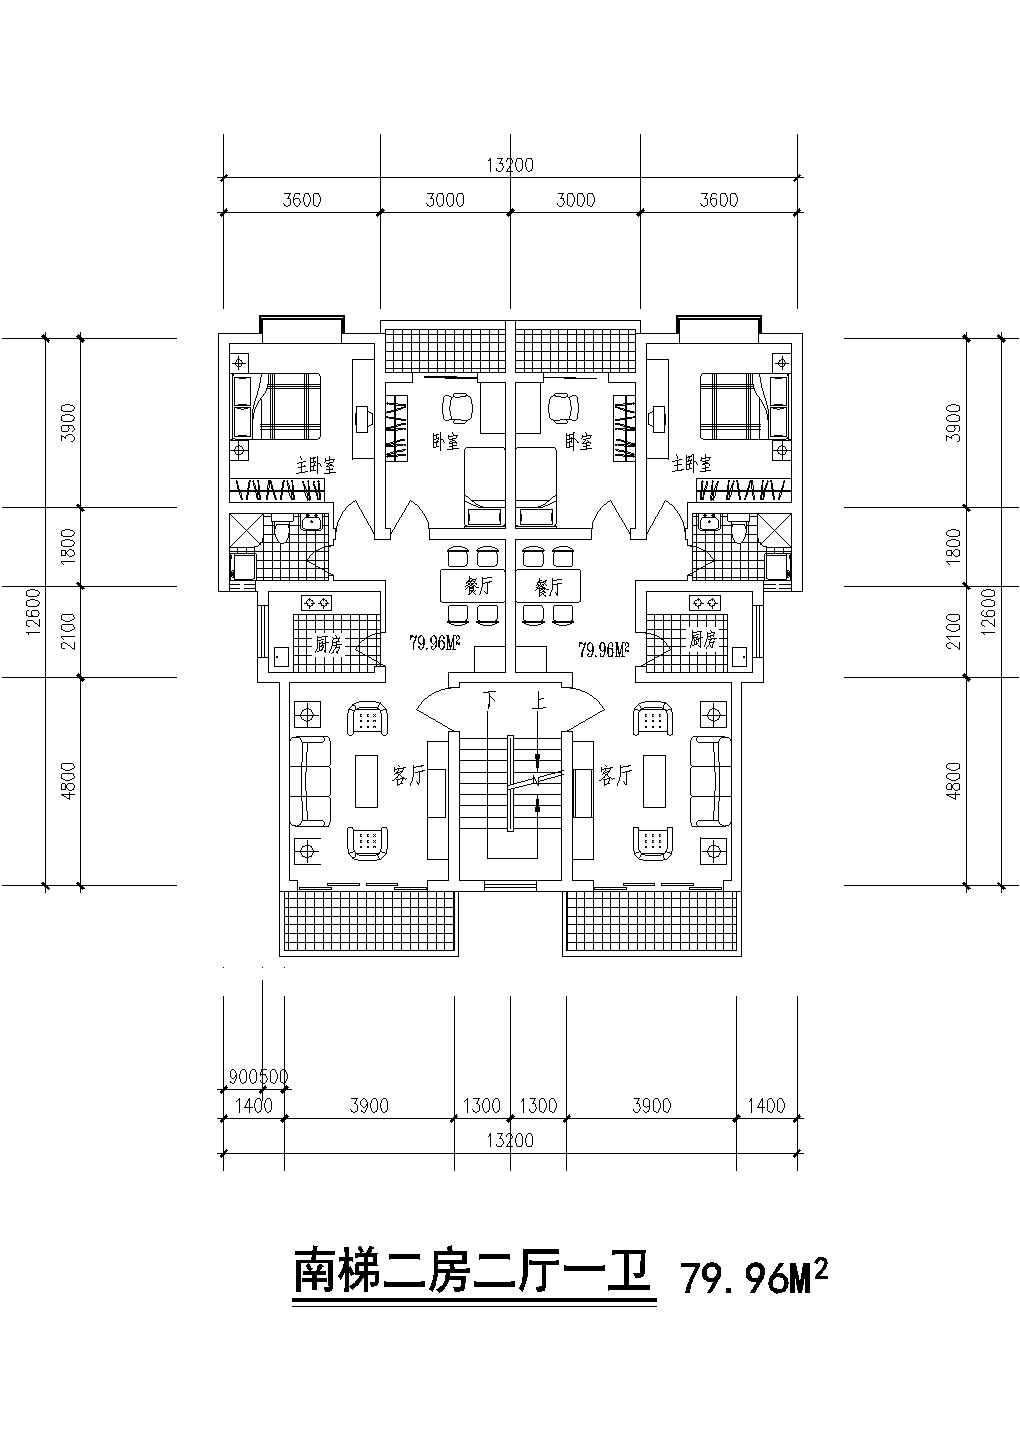 某大型商业单身公寓建筑户型详细方案设计施工CAD图纸